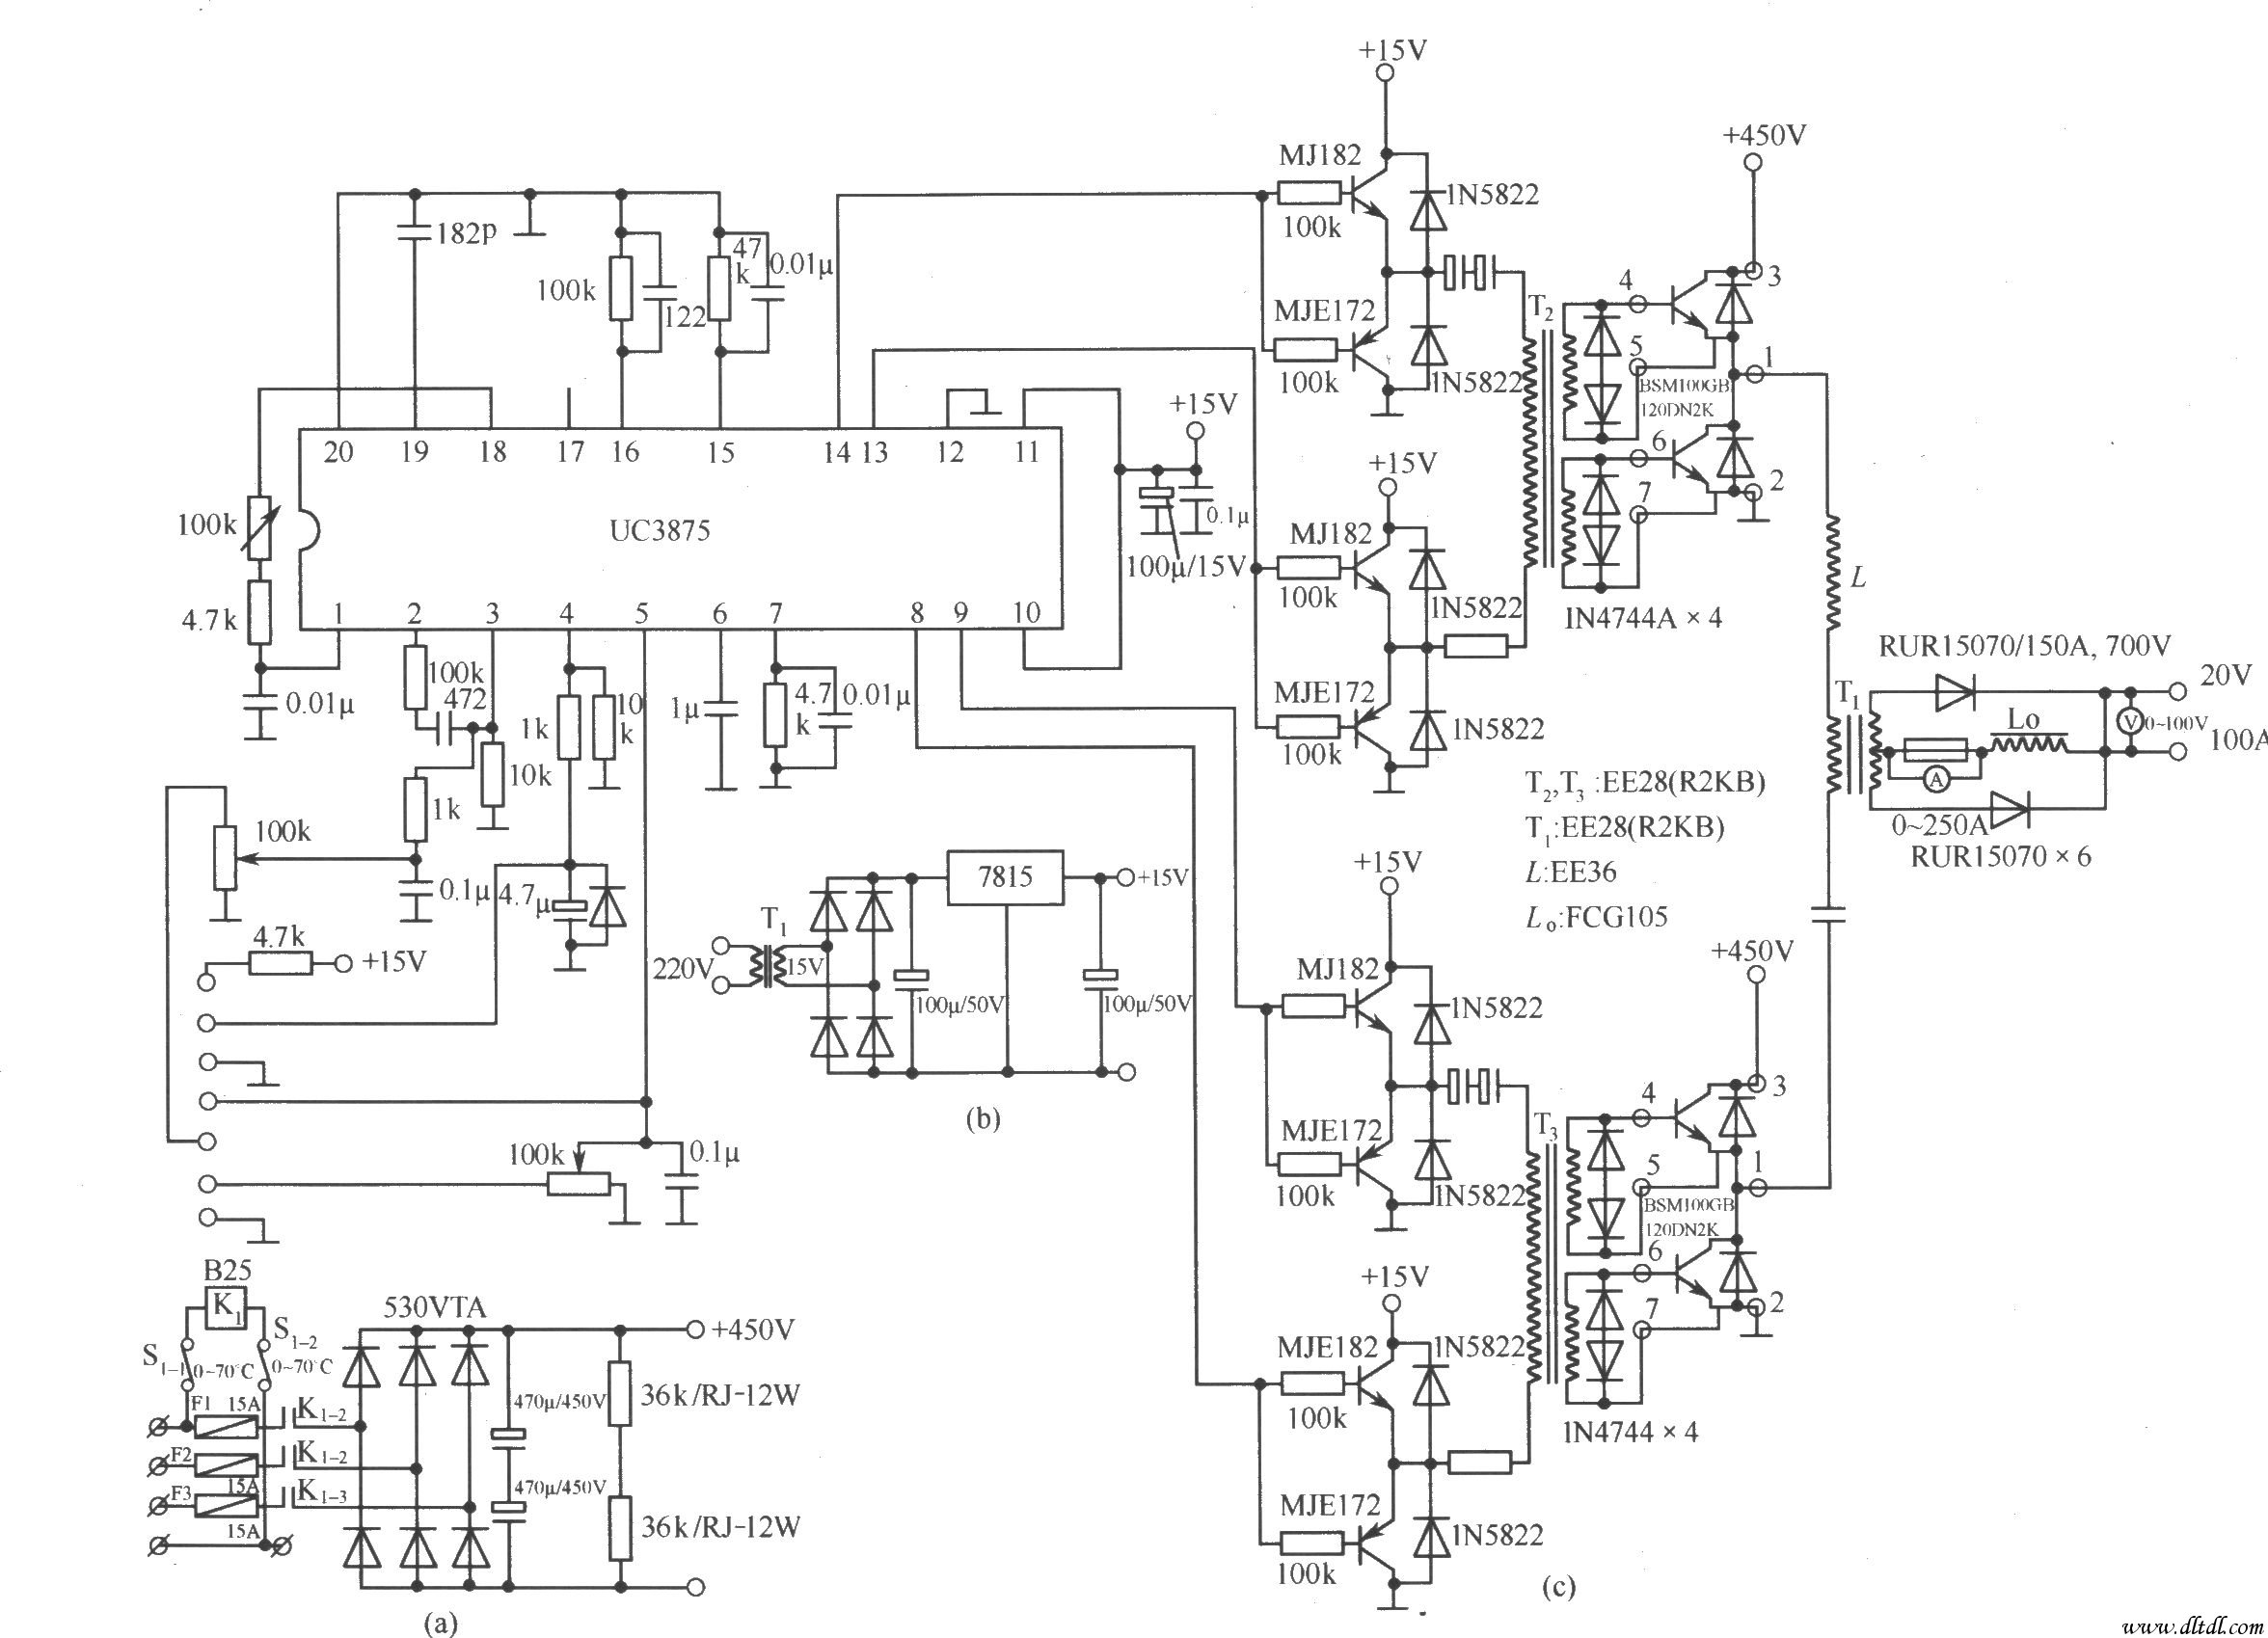 图(b)是辅助电源电路,它为全桥转换控制器uc3875和ig驱动电路提供